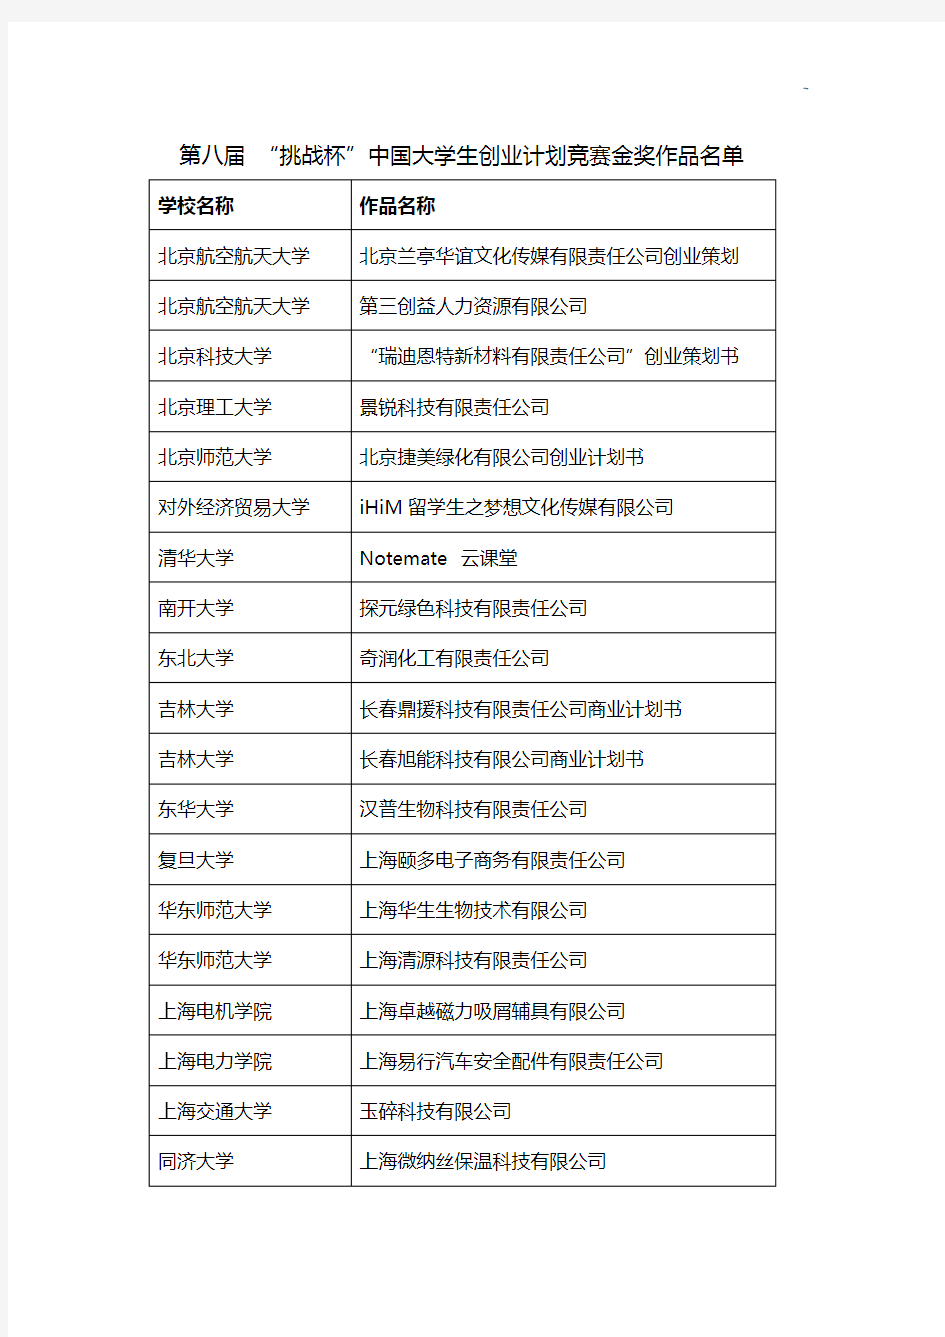 第八届挑战杯中国大学生创业计划竞赛金奖作品名单资料